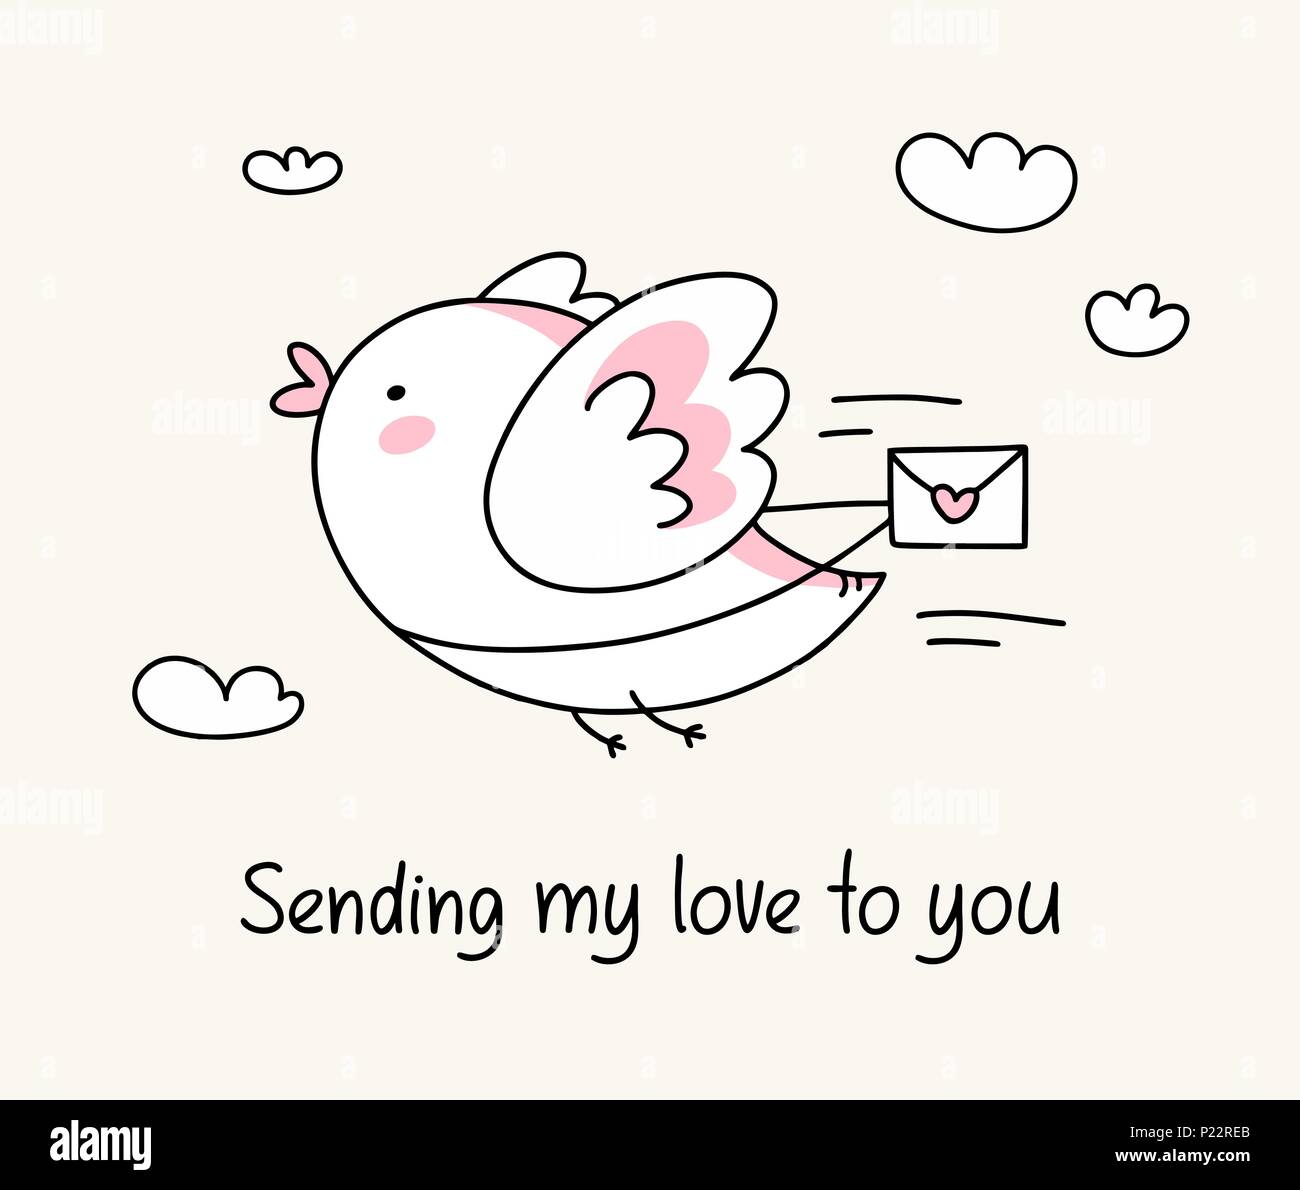 L'envoi de mon amour pour vous carte de souhaits avec drôle oiseau avec lettre d'amour. Happy Valentine's Day love cartoon illustration card Illustration de Vecteur